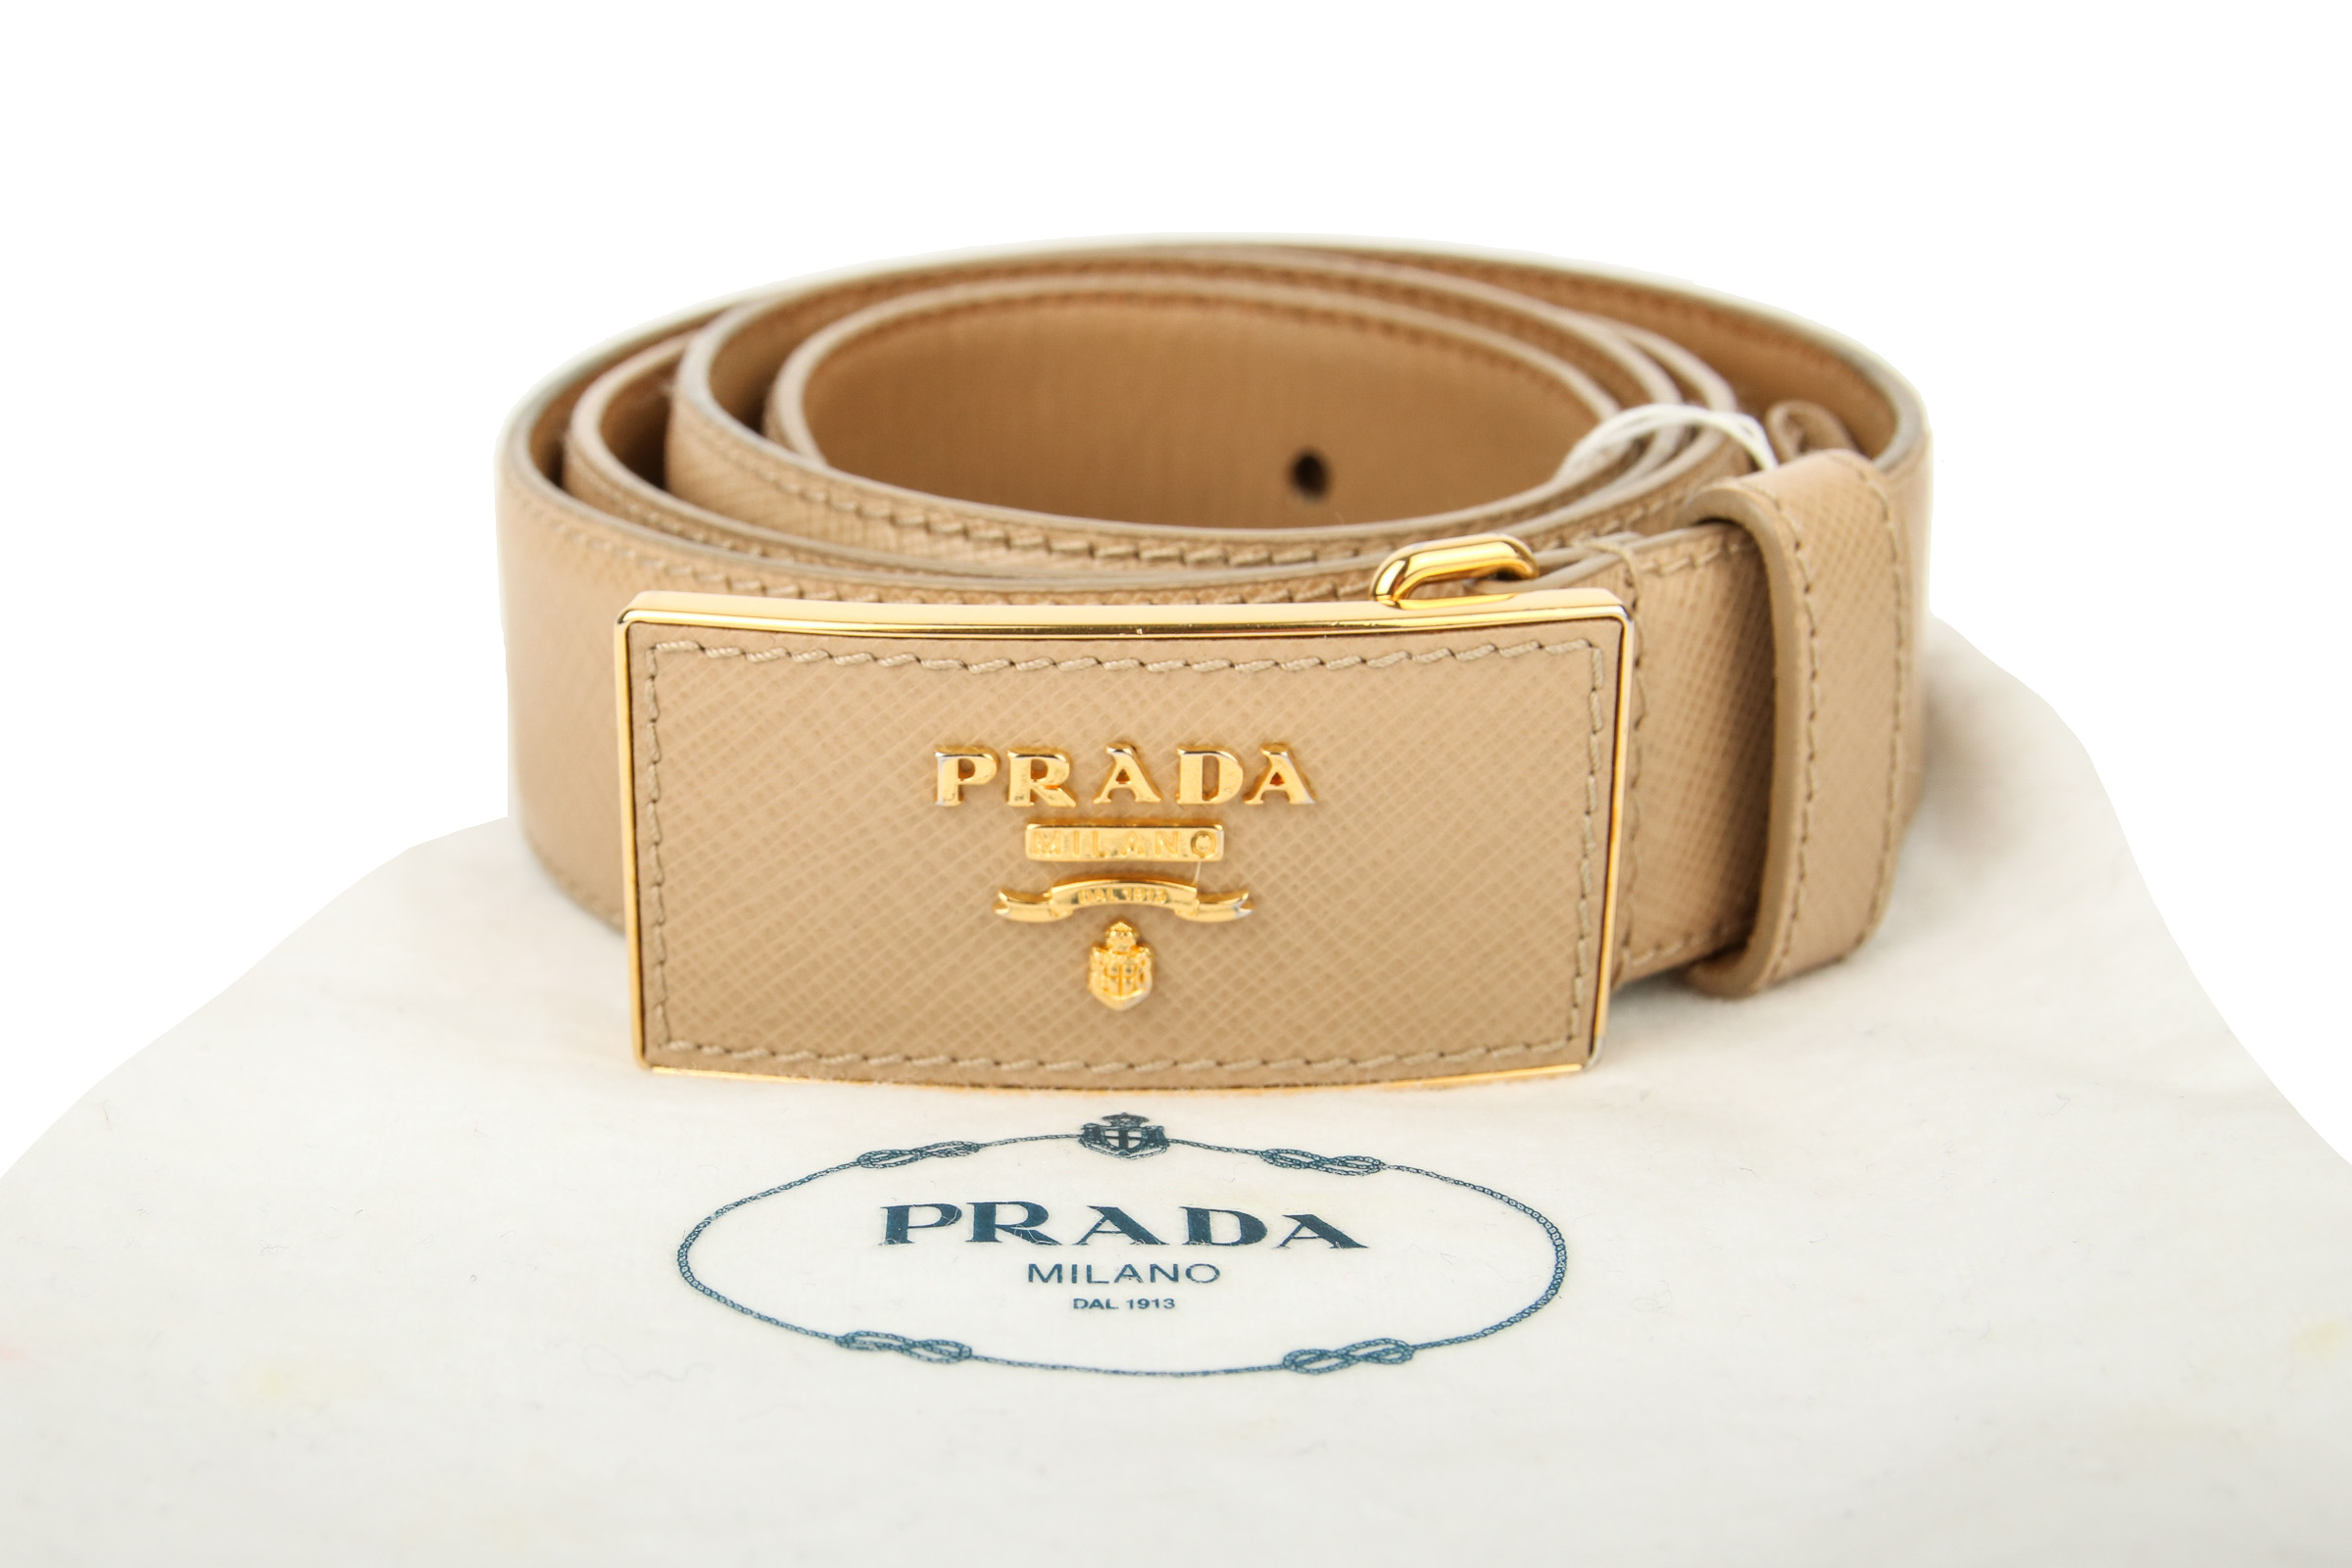 Prada Handtaschen & Accessoires | Luxussachen.com